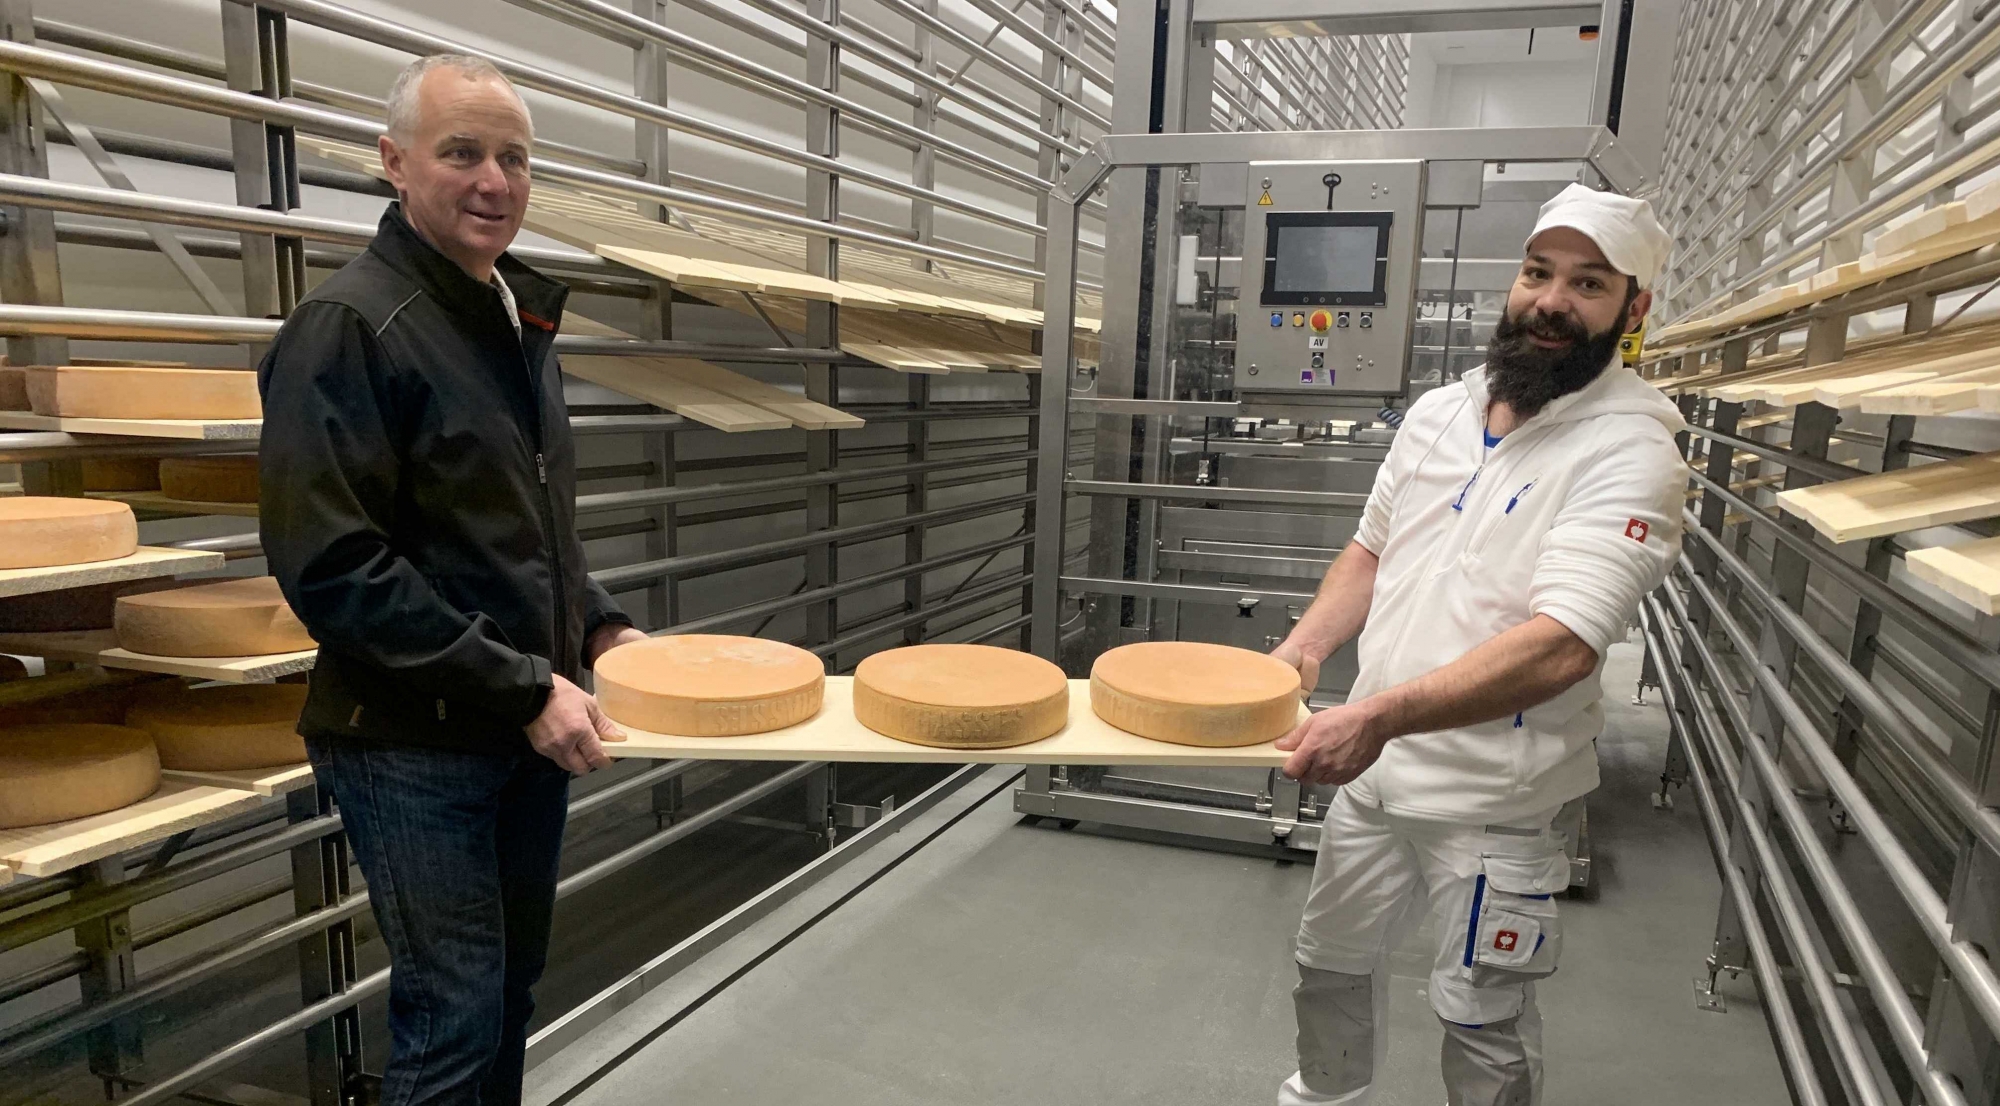 Le président de la Promovi, Laurent Ecoeur et le fromager responsable Gregory Gex-Fabry prennent symboliquement possession des premiers fromages dans la nouvelle cave d'affinage de La Cavagne. Devant le robot qui prendra le relais dès demain.